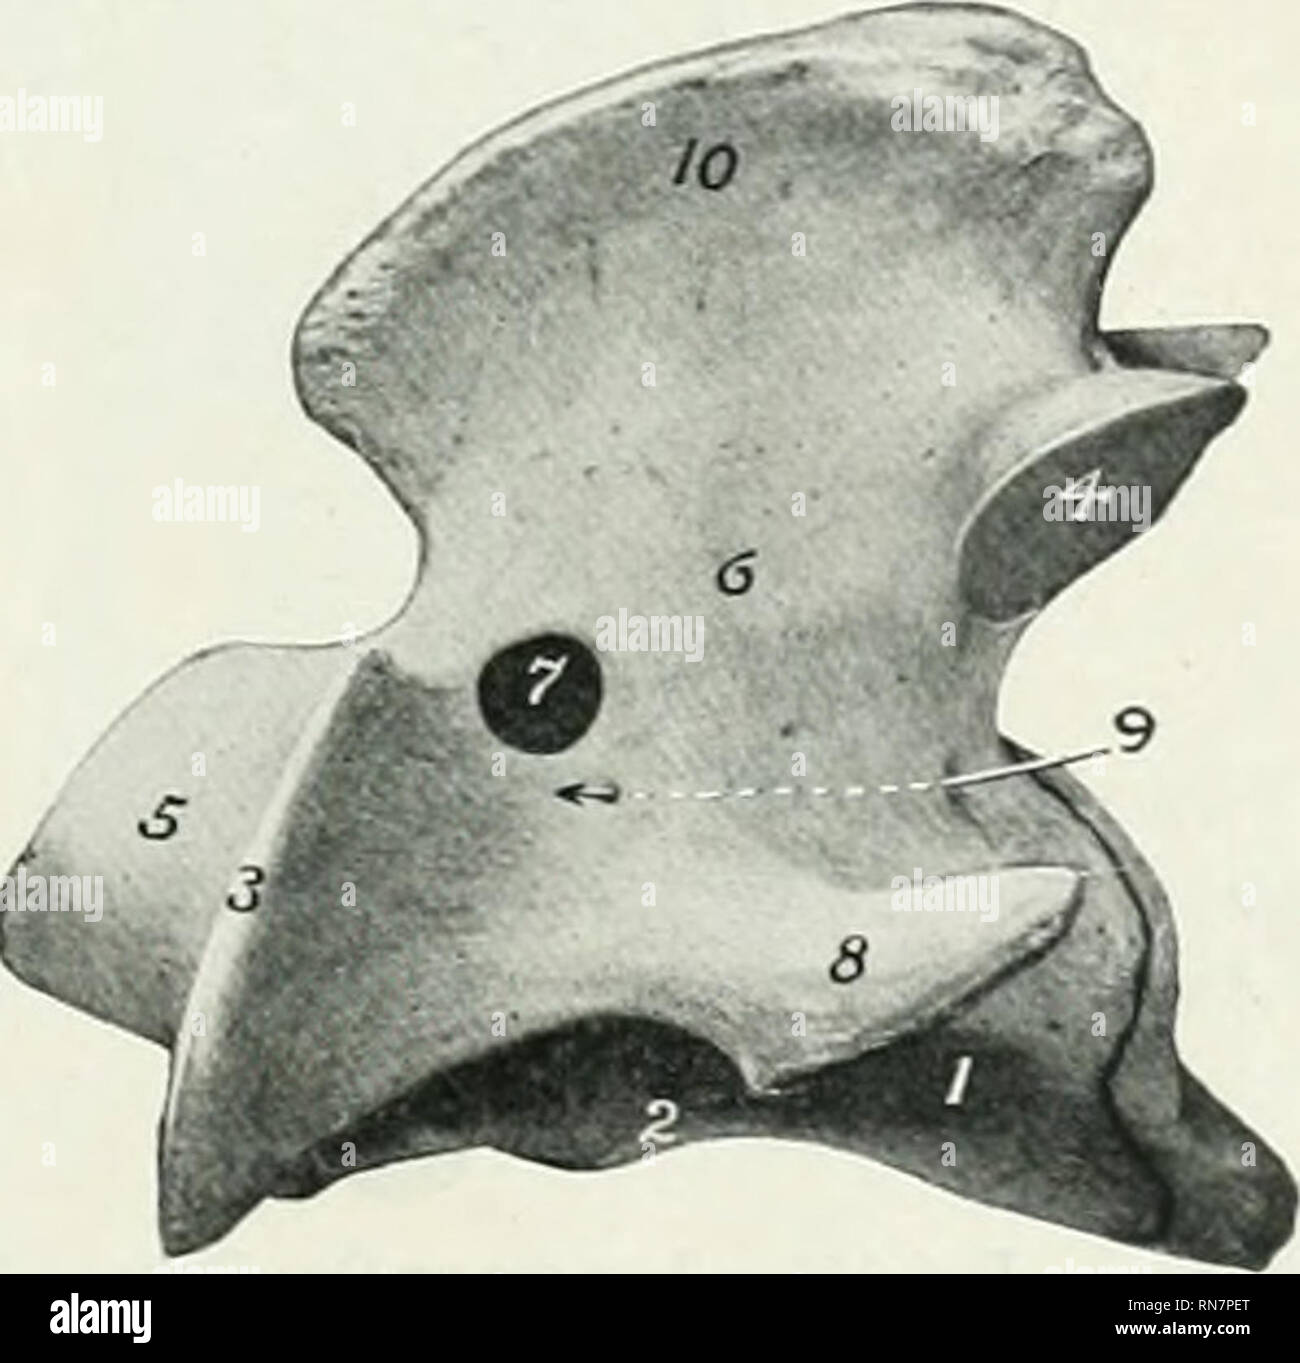 . L'anatomie de l'animal domestique. Anatomie vétérinaire. Fig. 122.-Atlas de boeuf ; vue dorsale. 1, 2, ; tubercule dorsal foramen intervertébral ; 3, 4 : foramen ;, aile ; 5, 5, surfaces articulaires postérieures ; 6, passage central (surface d'antres de l'axe). Fig. 123.-Axe du boeuf ; Vue latérale, I, ; 2, 3 ; rachis ventrale, apophyse antérieure ; 4, 5 ; processus articulaire postérieure de l'art ; 6, 7 ; arch, foramen intervertébral ; 8, produc- tion transversale ; 9 foramen transversarium, et cacalis {trana- je ligne pointillée) ; 10, apophyse épineuse.. Veuillez noter que ces images sont extraites de la page numérisée des images qui ma Banque D'Images